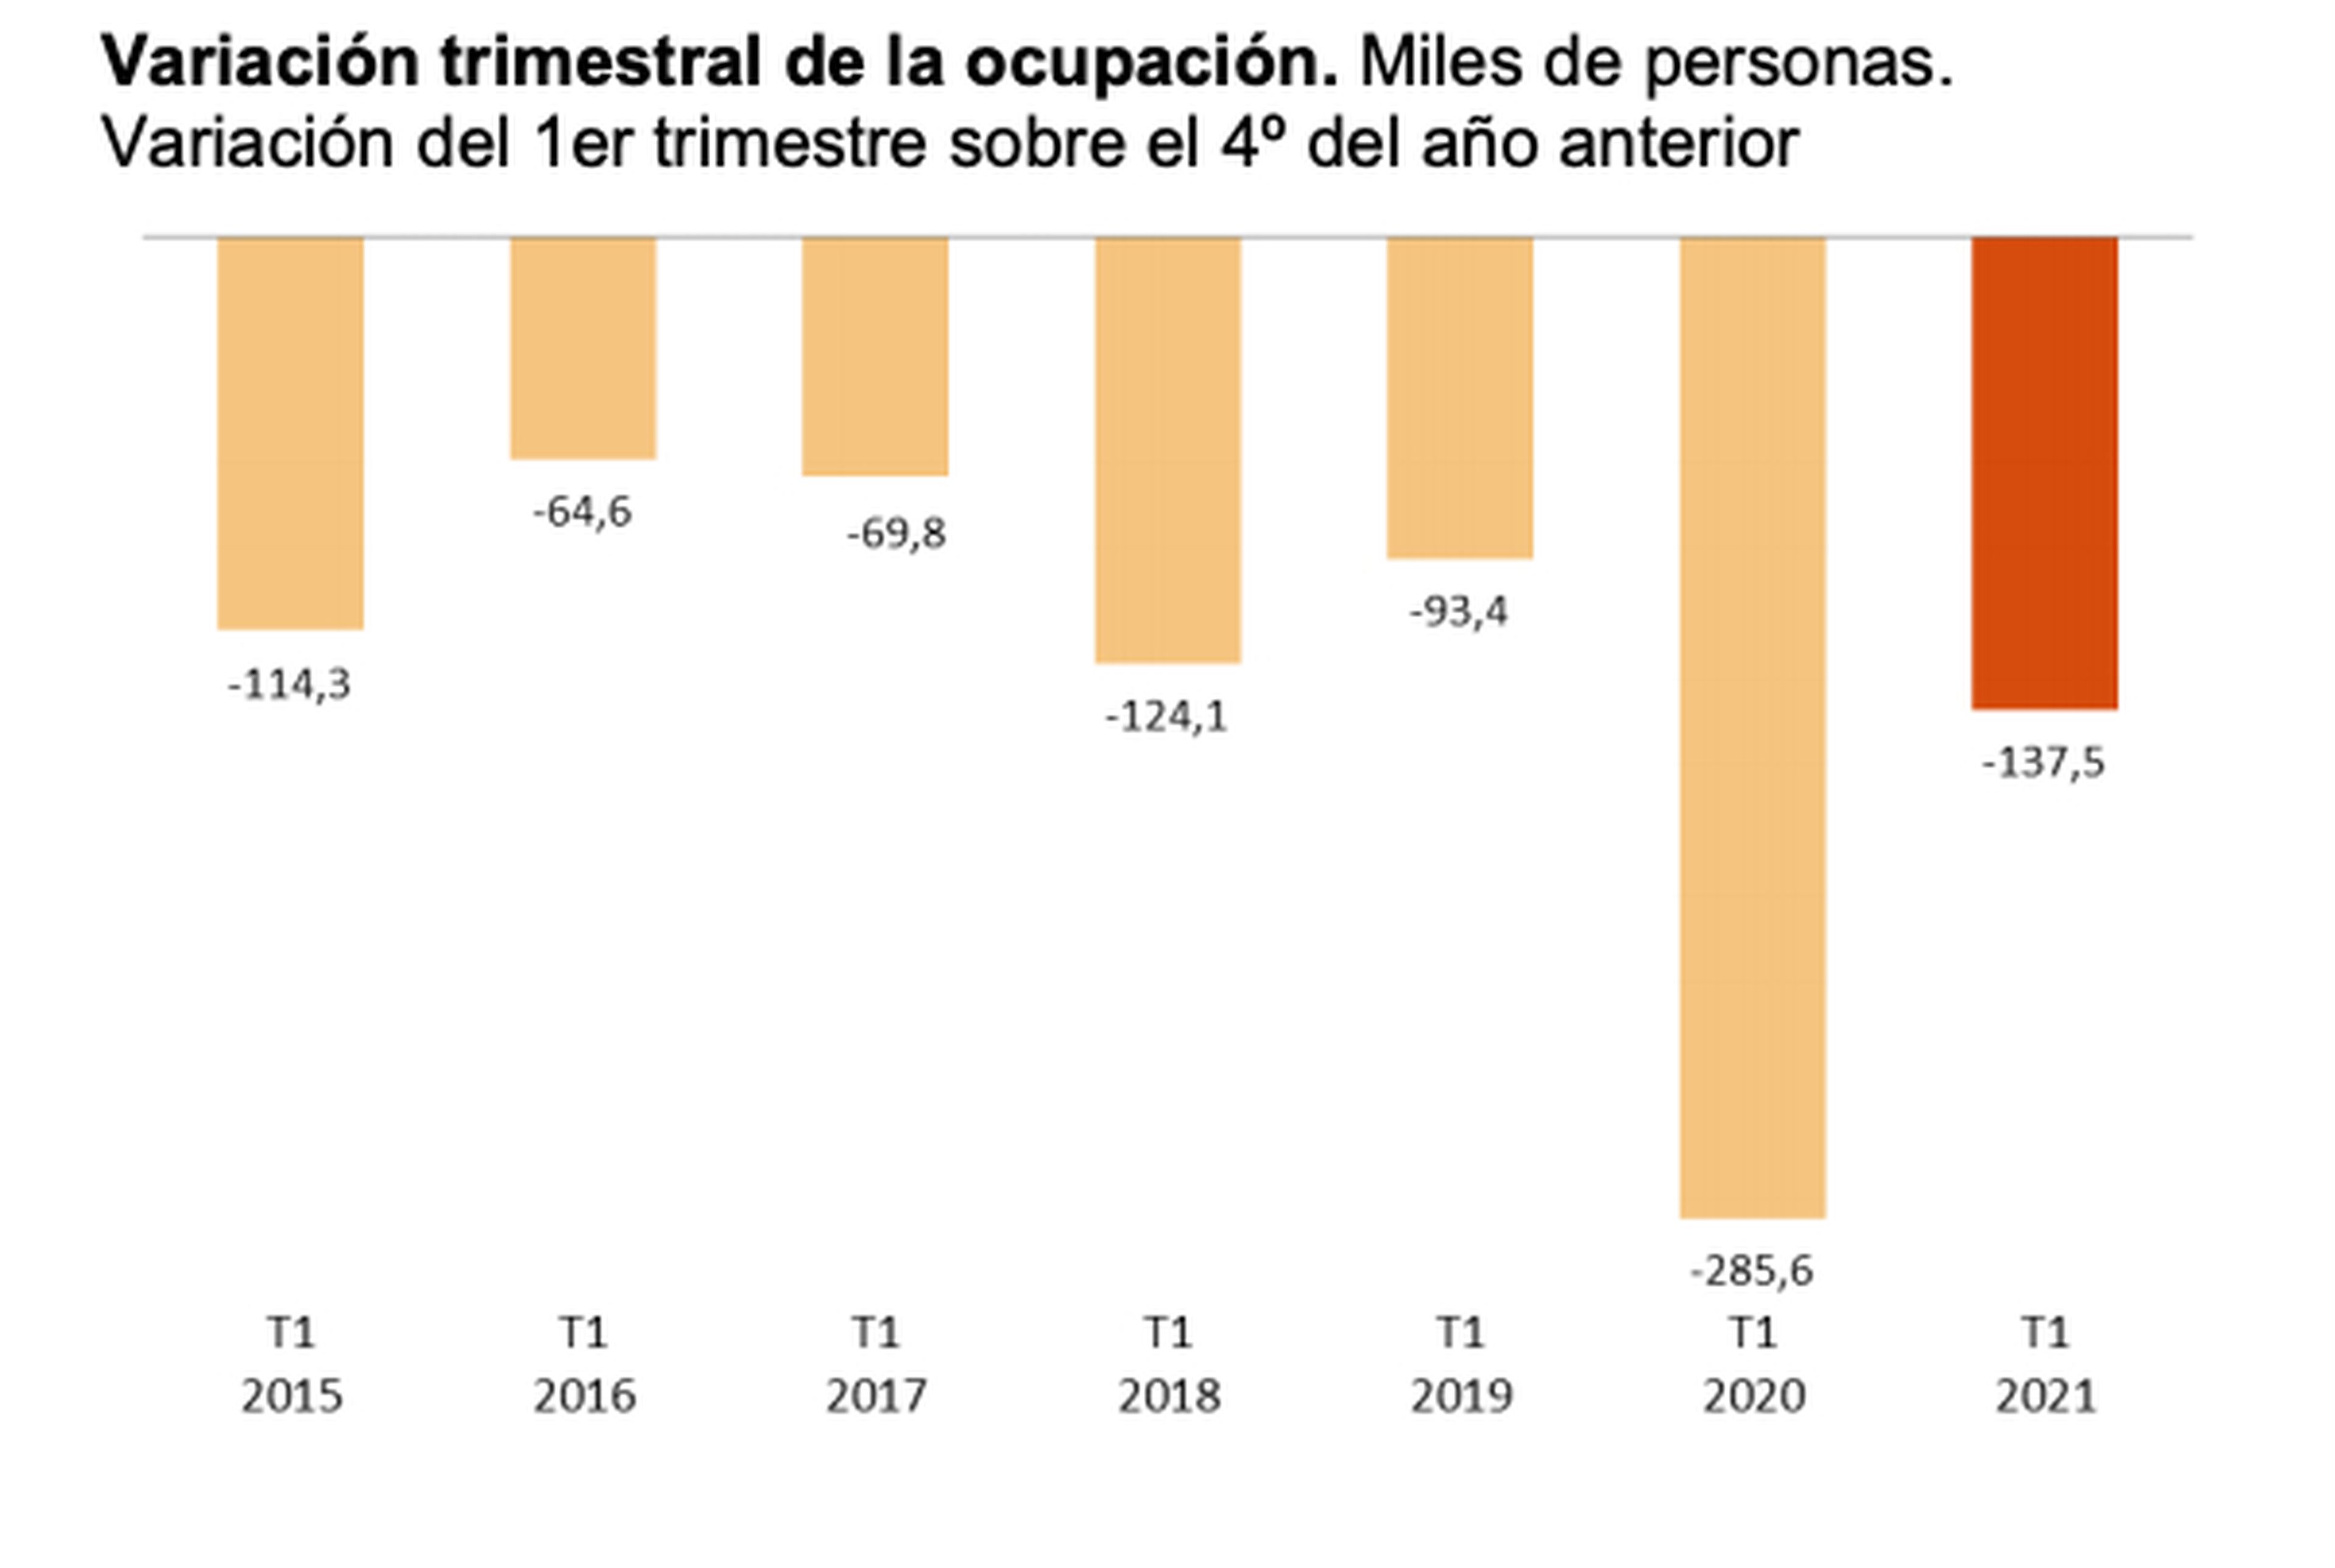 Evolución trimestral de la ocupación en los primeros 3 meses del año desde 2015